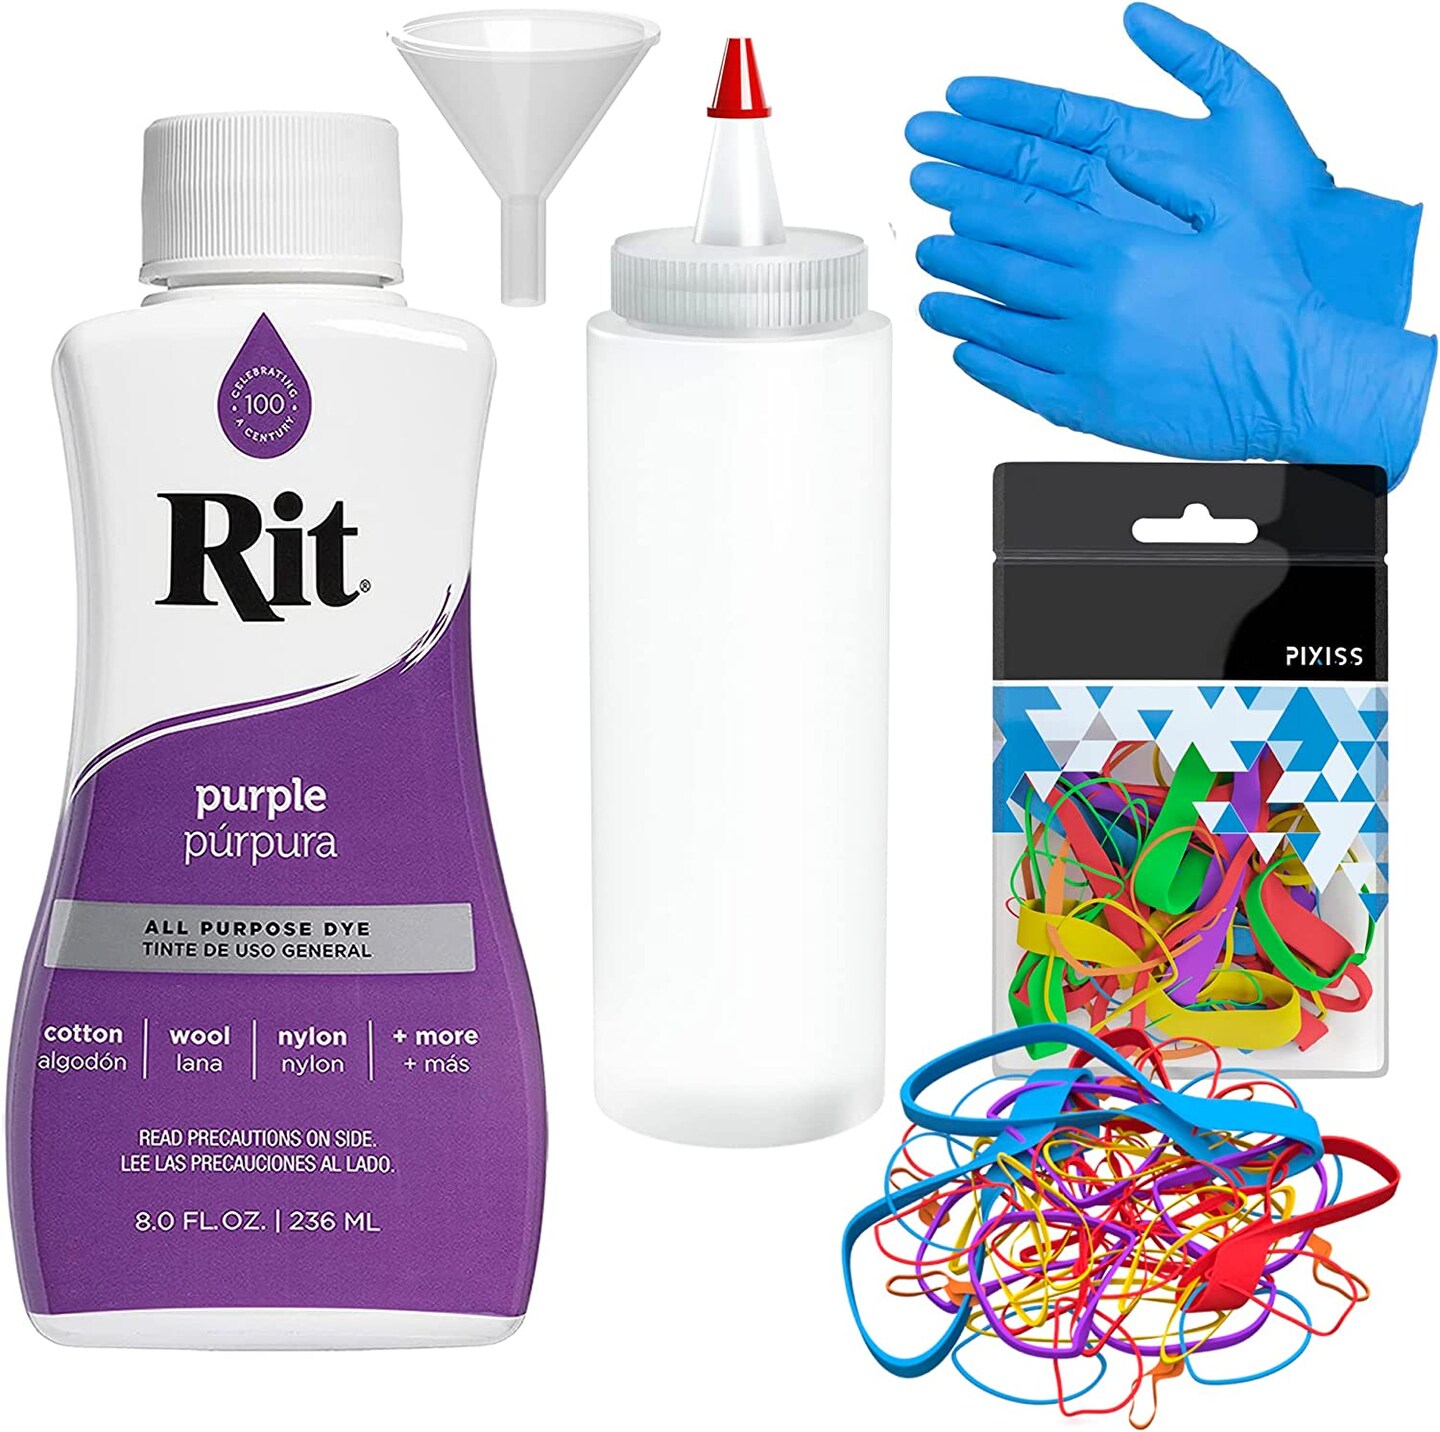 Rit Dye, All Purpose, Purple - 8.0 fl oz